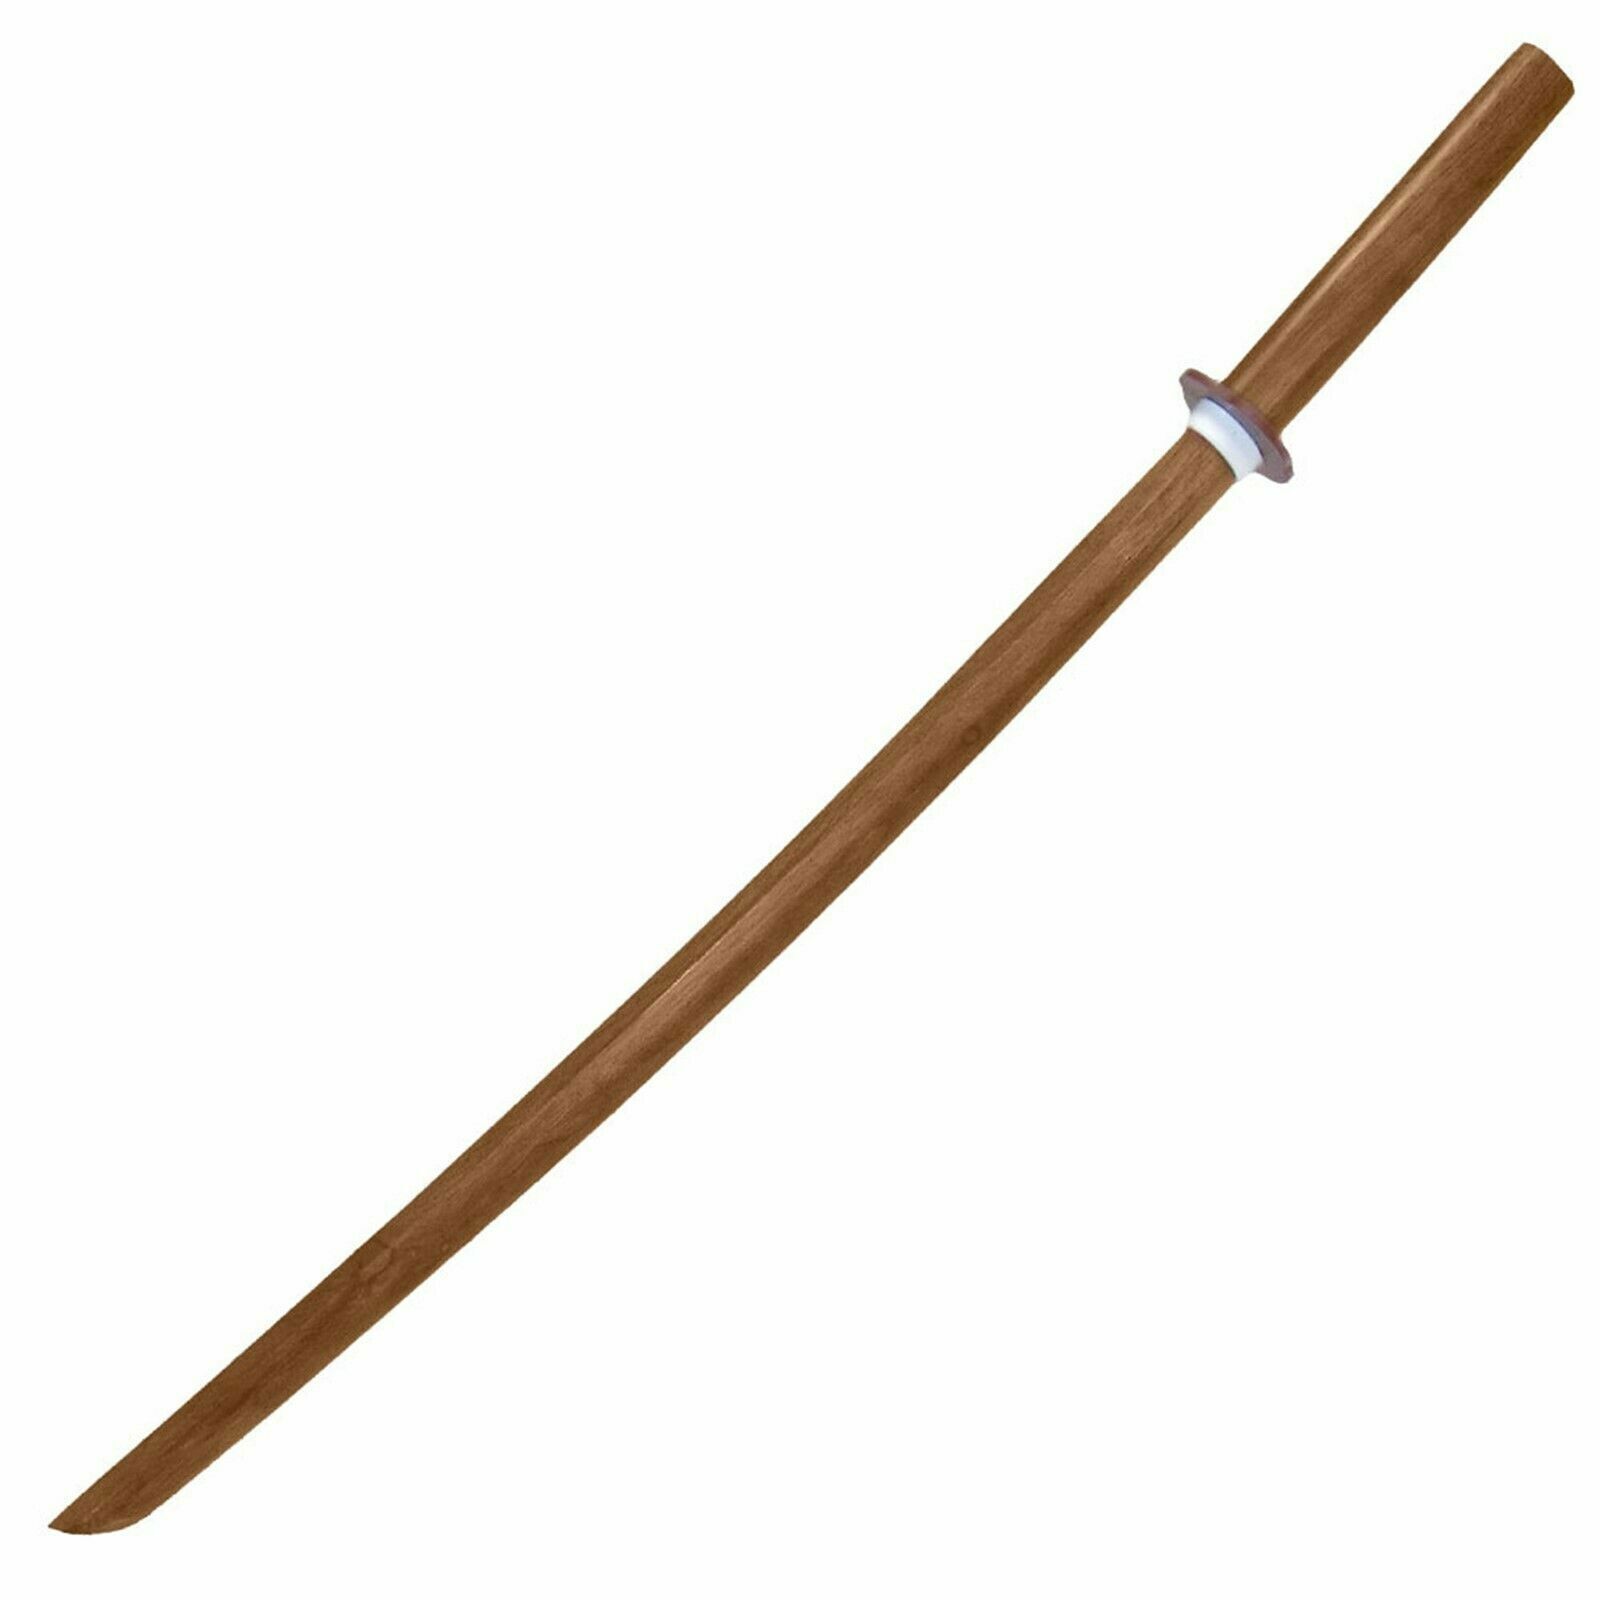 Wooden Practice Samurai Bokken Sword 40 Inch Play Sword Beginner Training